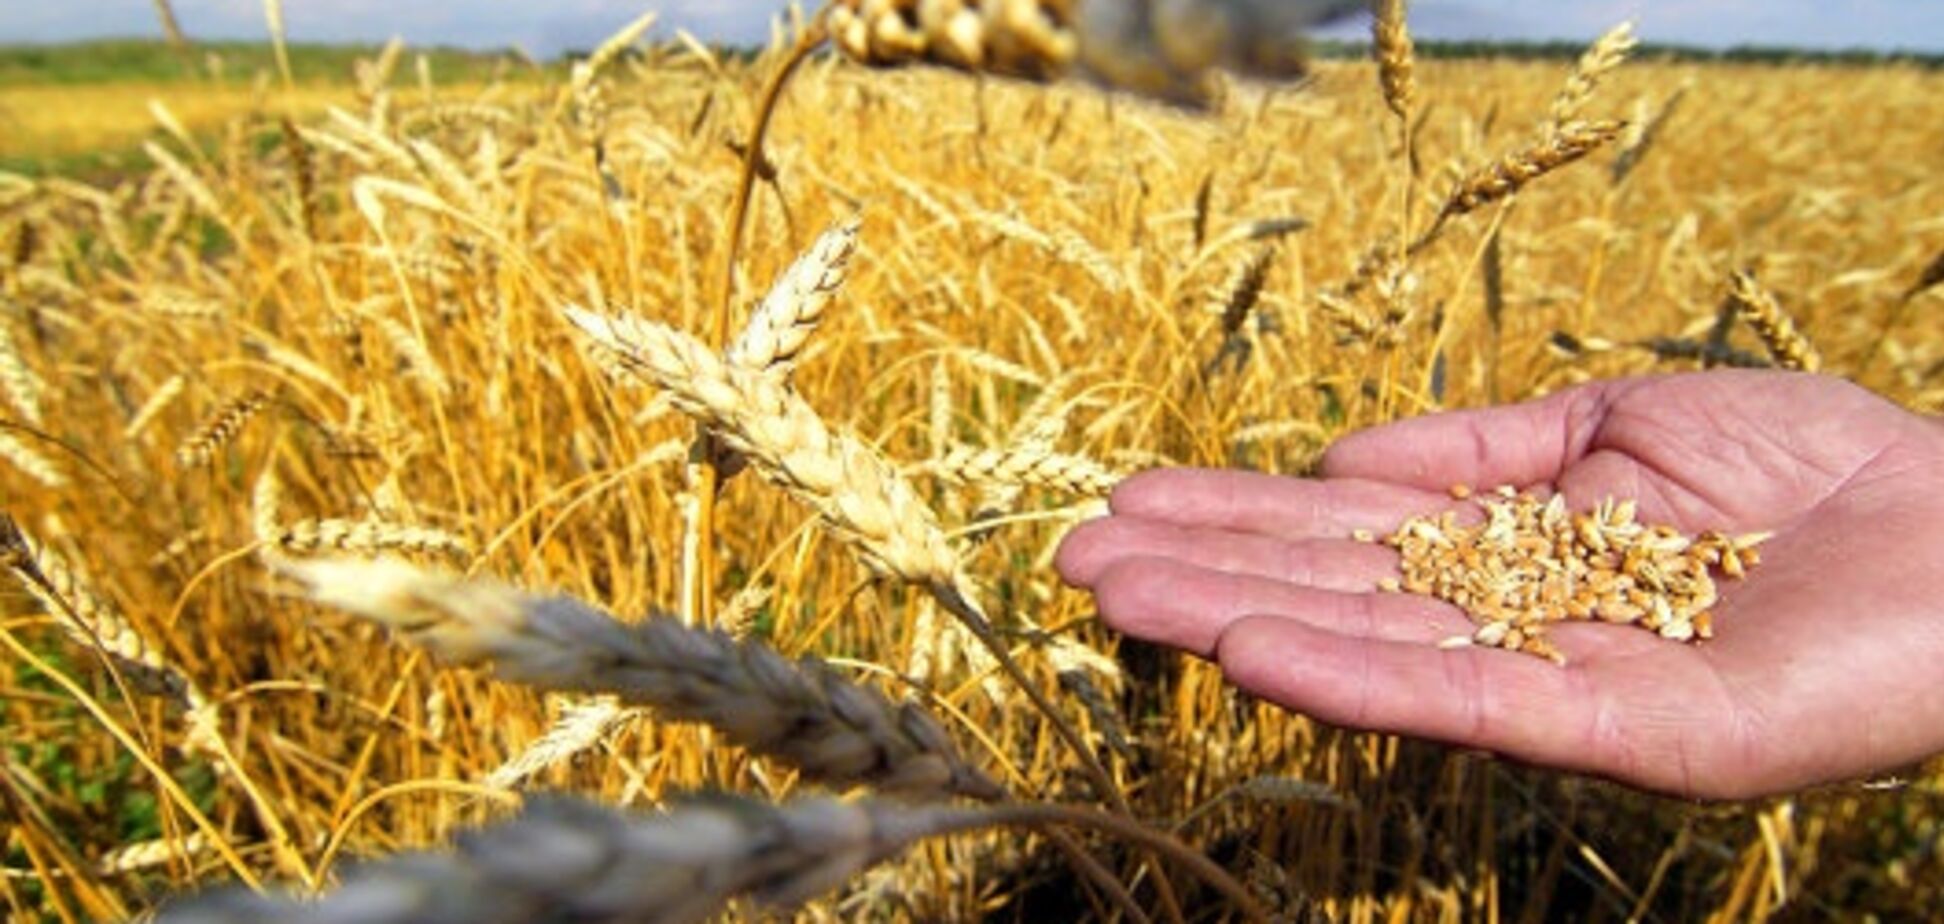 В Одесской области рейдеры отбирают урожай у аграриев - СМИ